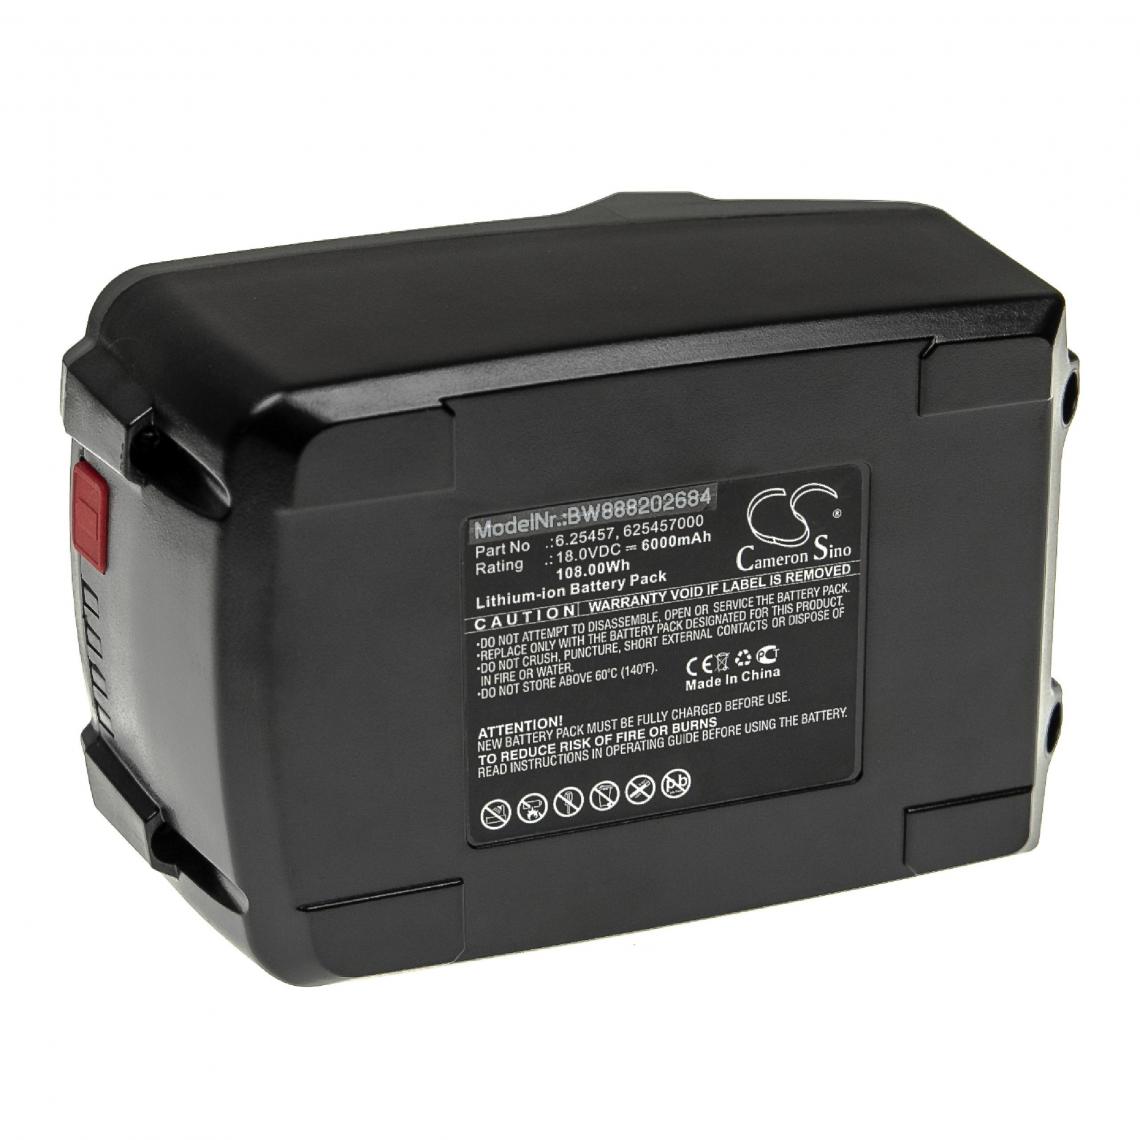 Vhbw - vhbw Batterie compatible avec Metabo 160-5 18 LTX BL OF, AG 18, AG 18 602242850, AHS 18 outil électrique (6000mAh Li-ion 18 V) - Autre appareil de mesure